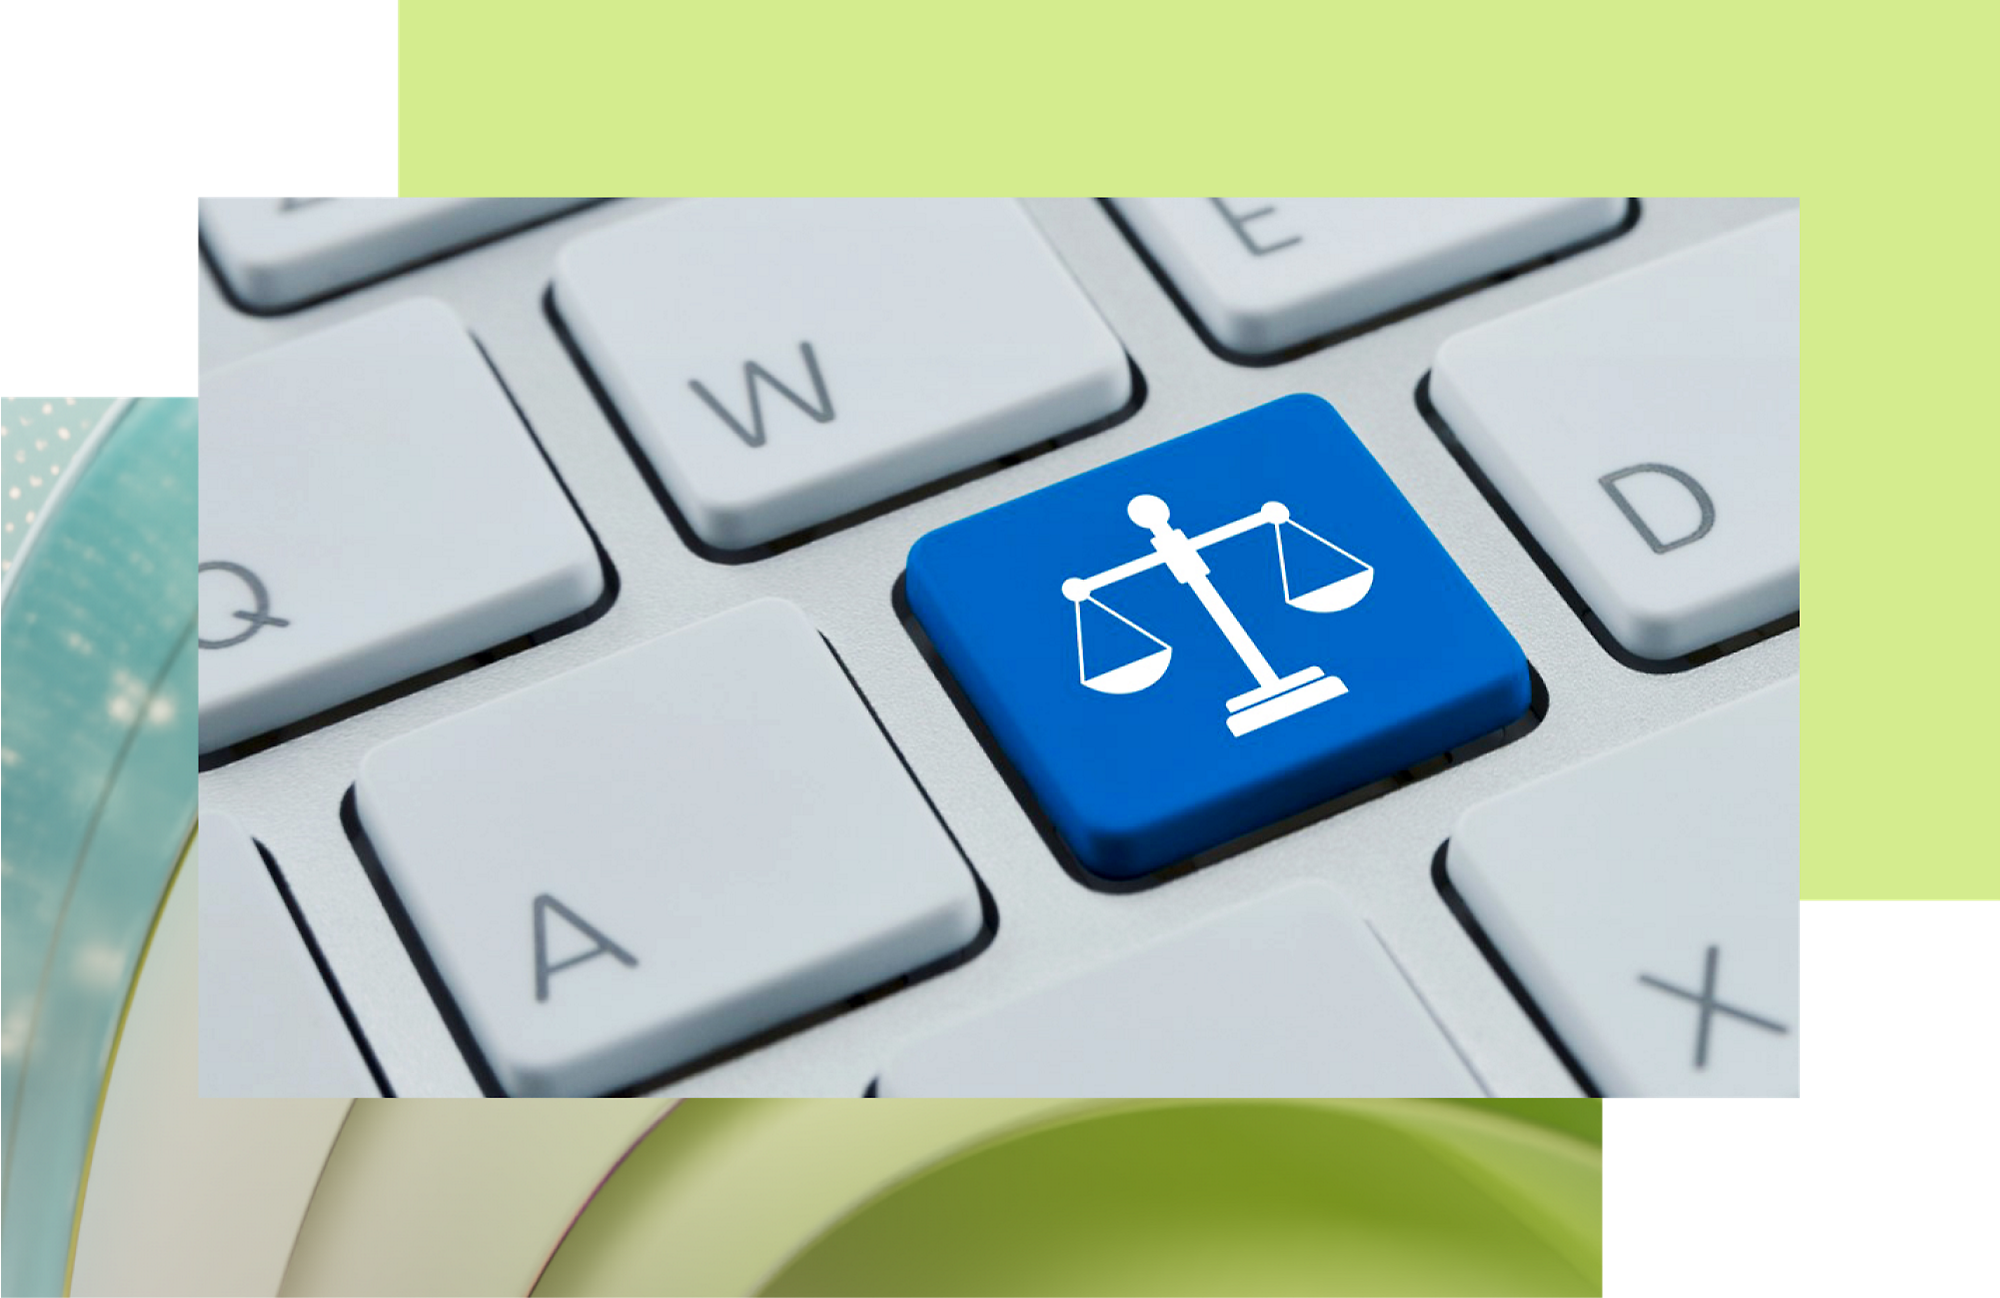 Sinine klahv, mille klaviatuuril on valge õiguskaitse ikoon, mis sümboliseerib õigusabi või õiglusele keskendunud tehnoloogiat.